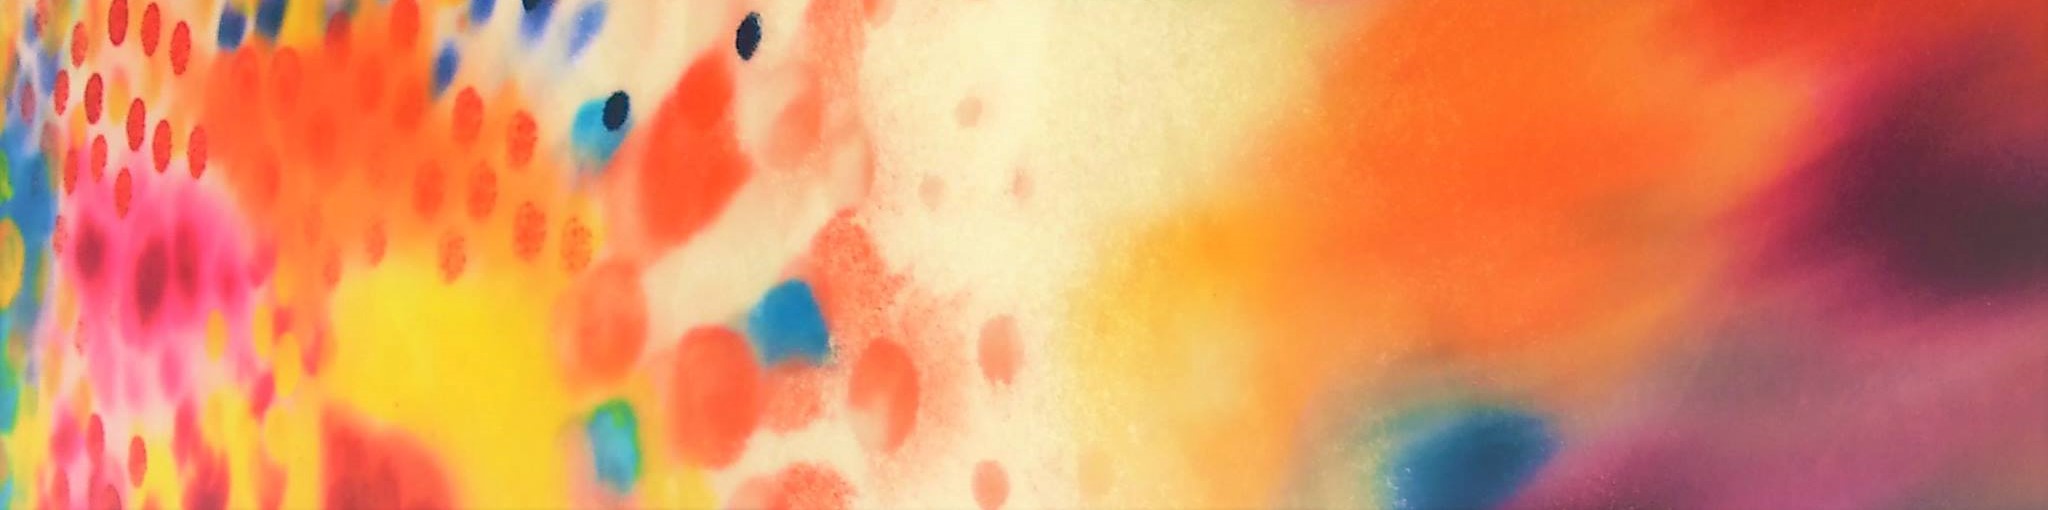 Taidematka Gumbostrandiin ja Nastolan kesänäyttelyyn Kuvassa värikäs tunnelmaa taidematkalla kuvastava abstrakti maalaus